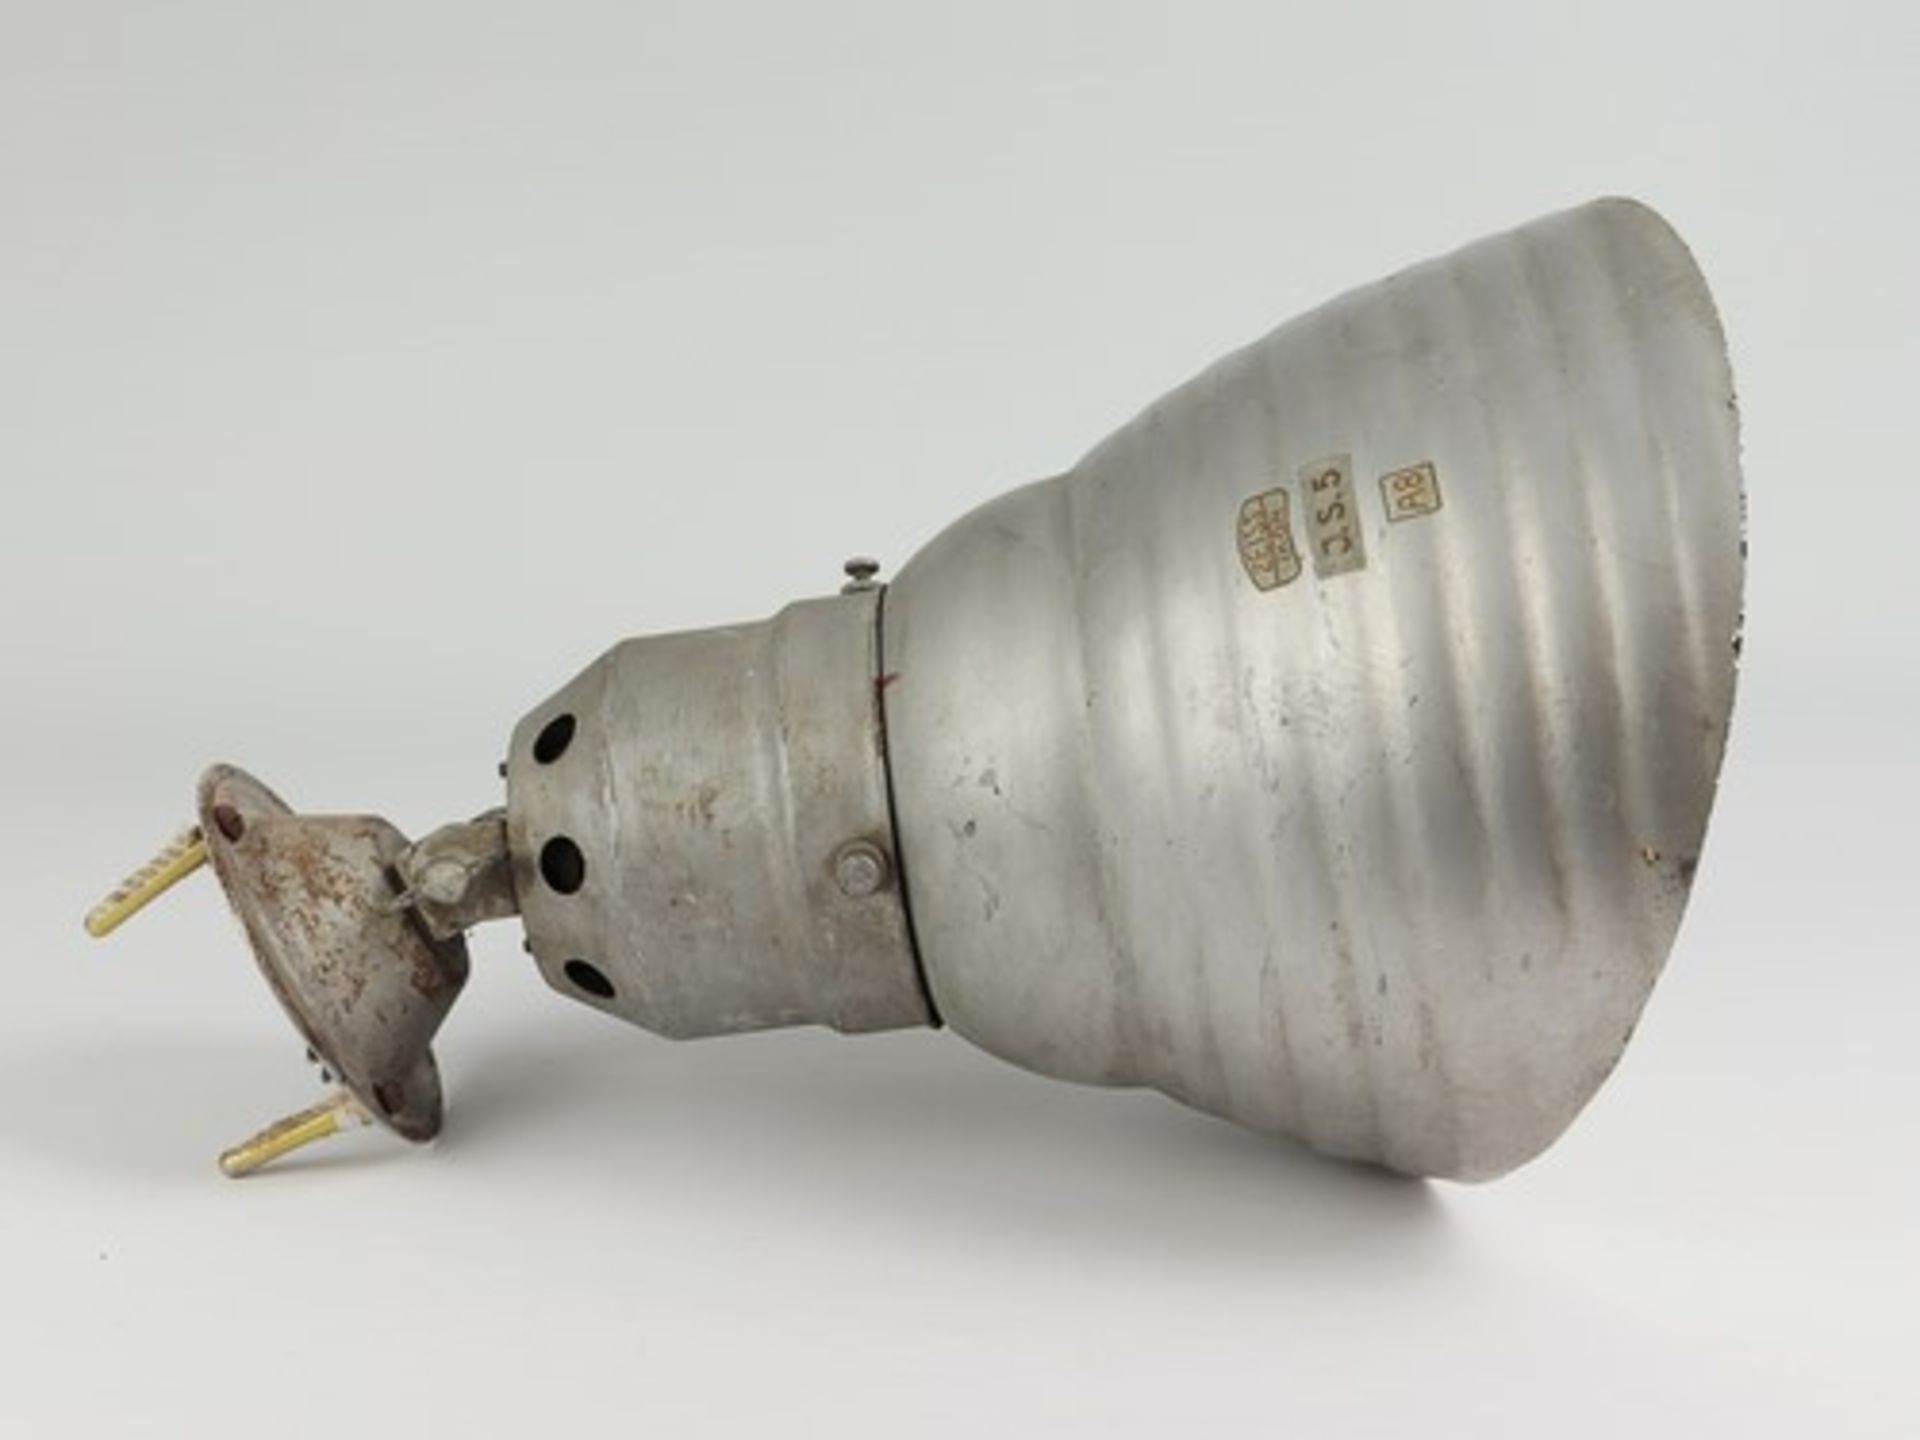 Industrielampe - Zeissum 1930 Berlin, Deckenlampe gem. Zeiss Ikon J.S.5 A8, Metall/Glas, einflammig, - Bild 3 aus 4